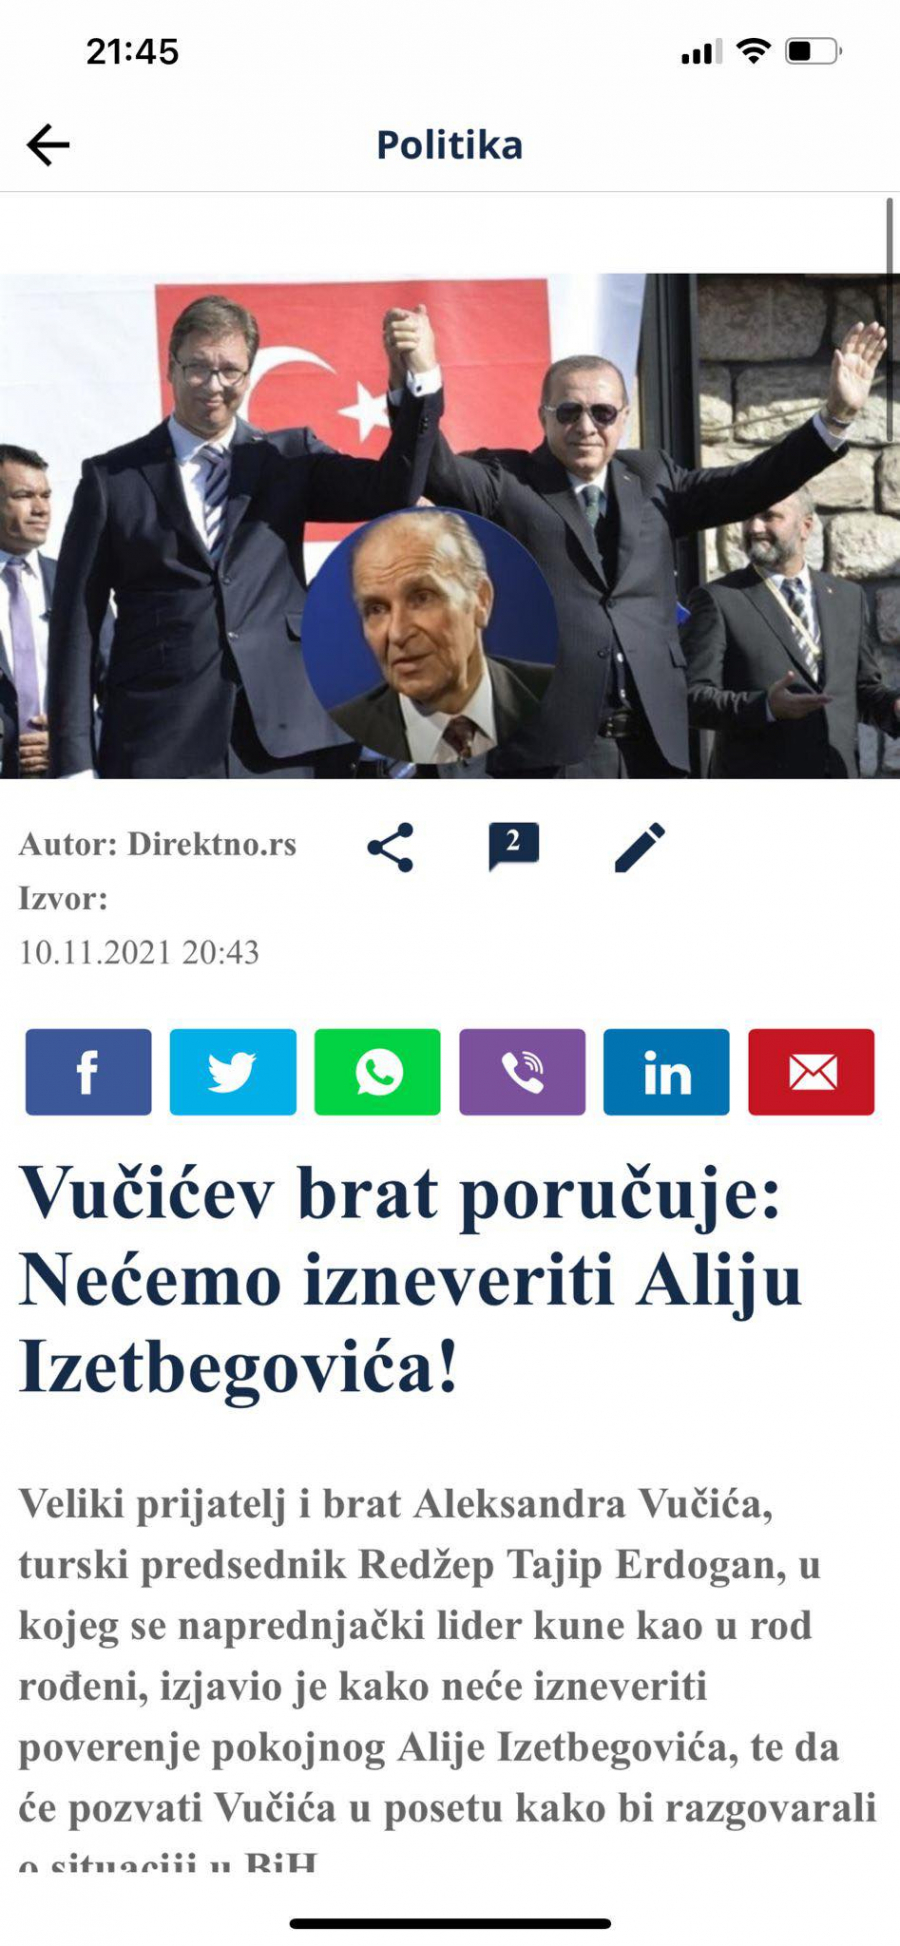 POSTAJU BIZARNI Izmislili novog brata predsedniku Vučiću